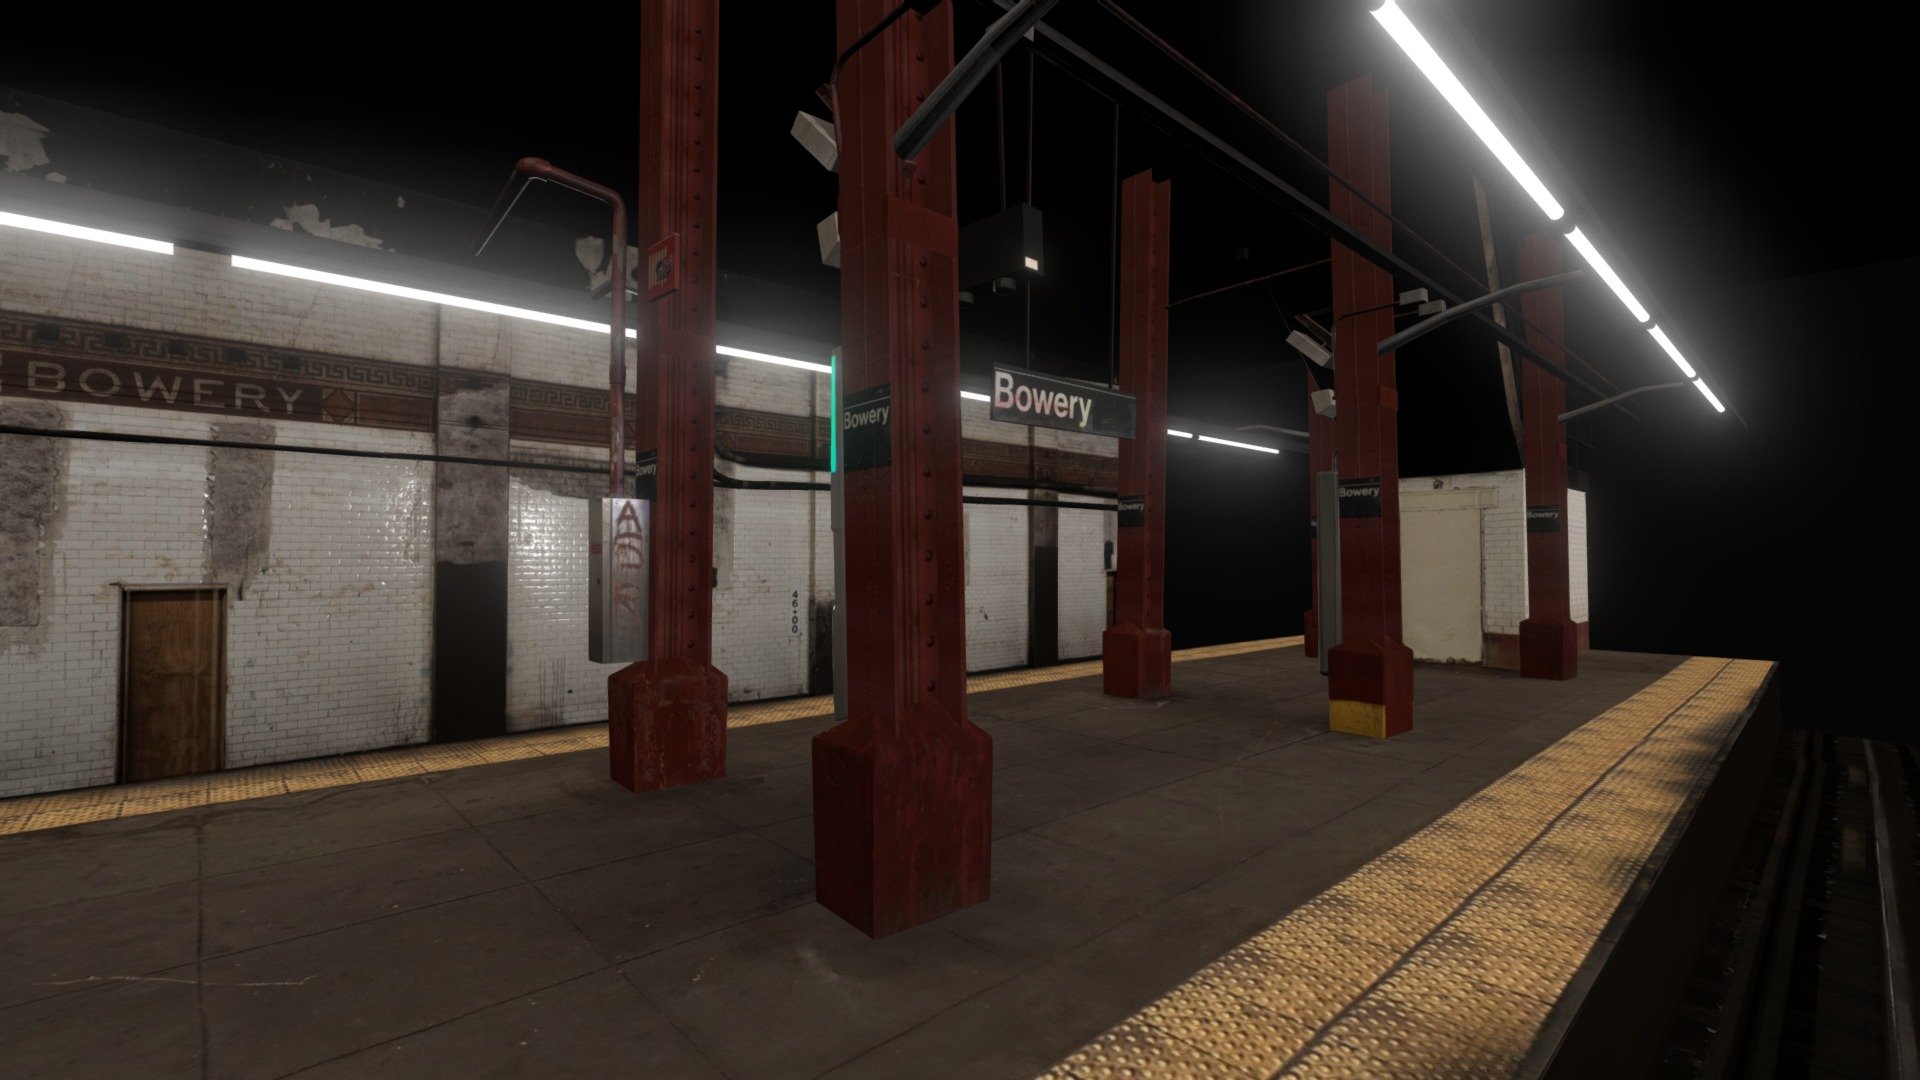 Bowery MTA Metro Station NYC - Bowery - Buy Royalty Free 3D model by Phantasma Labs (@phantasmalabs) 3d model